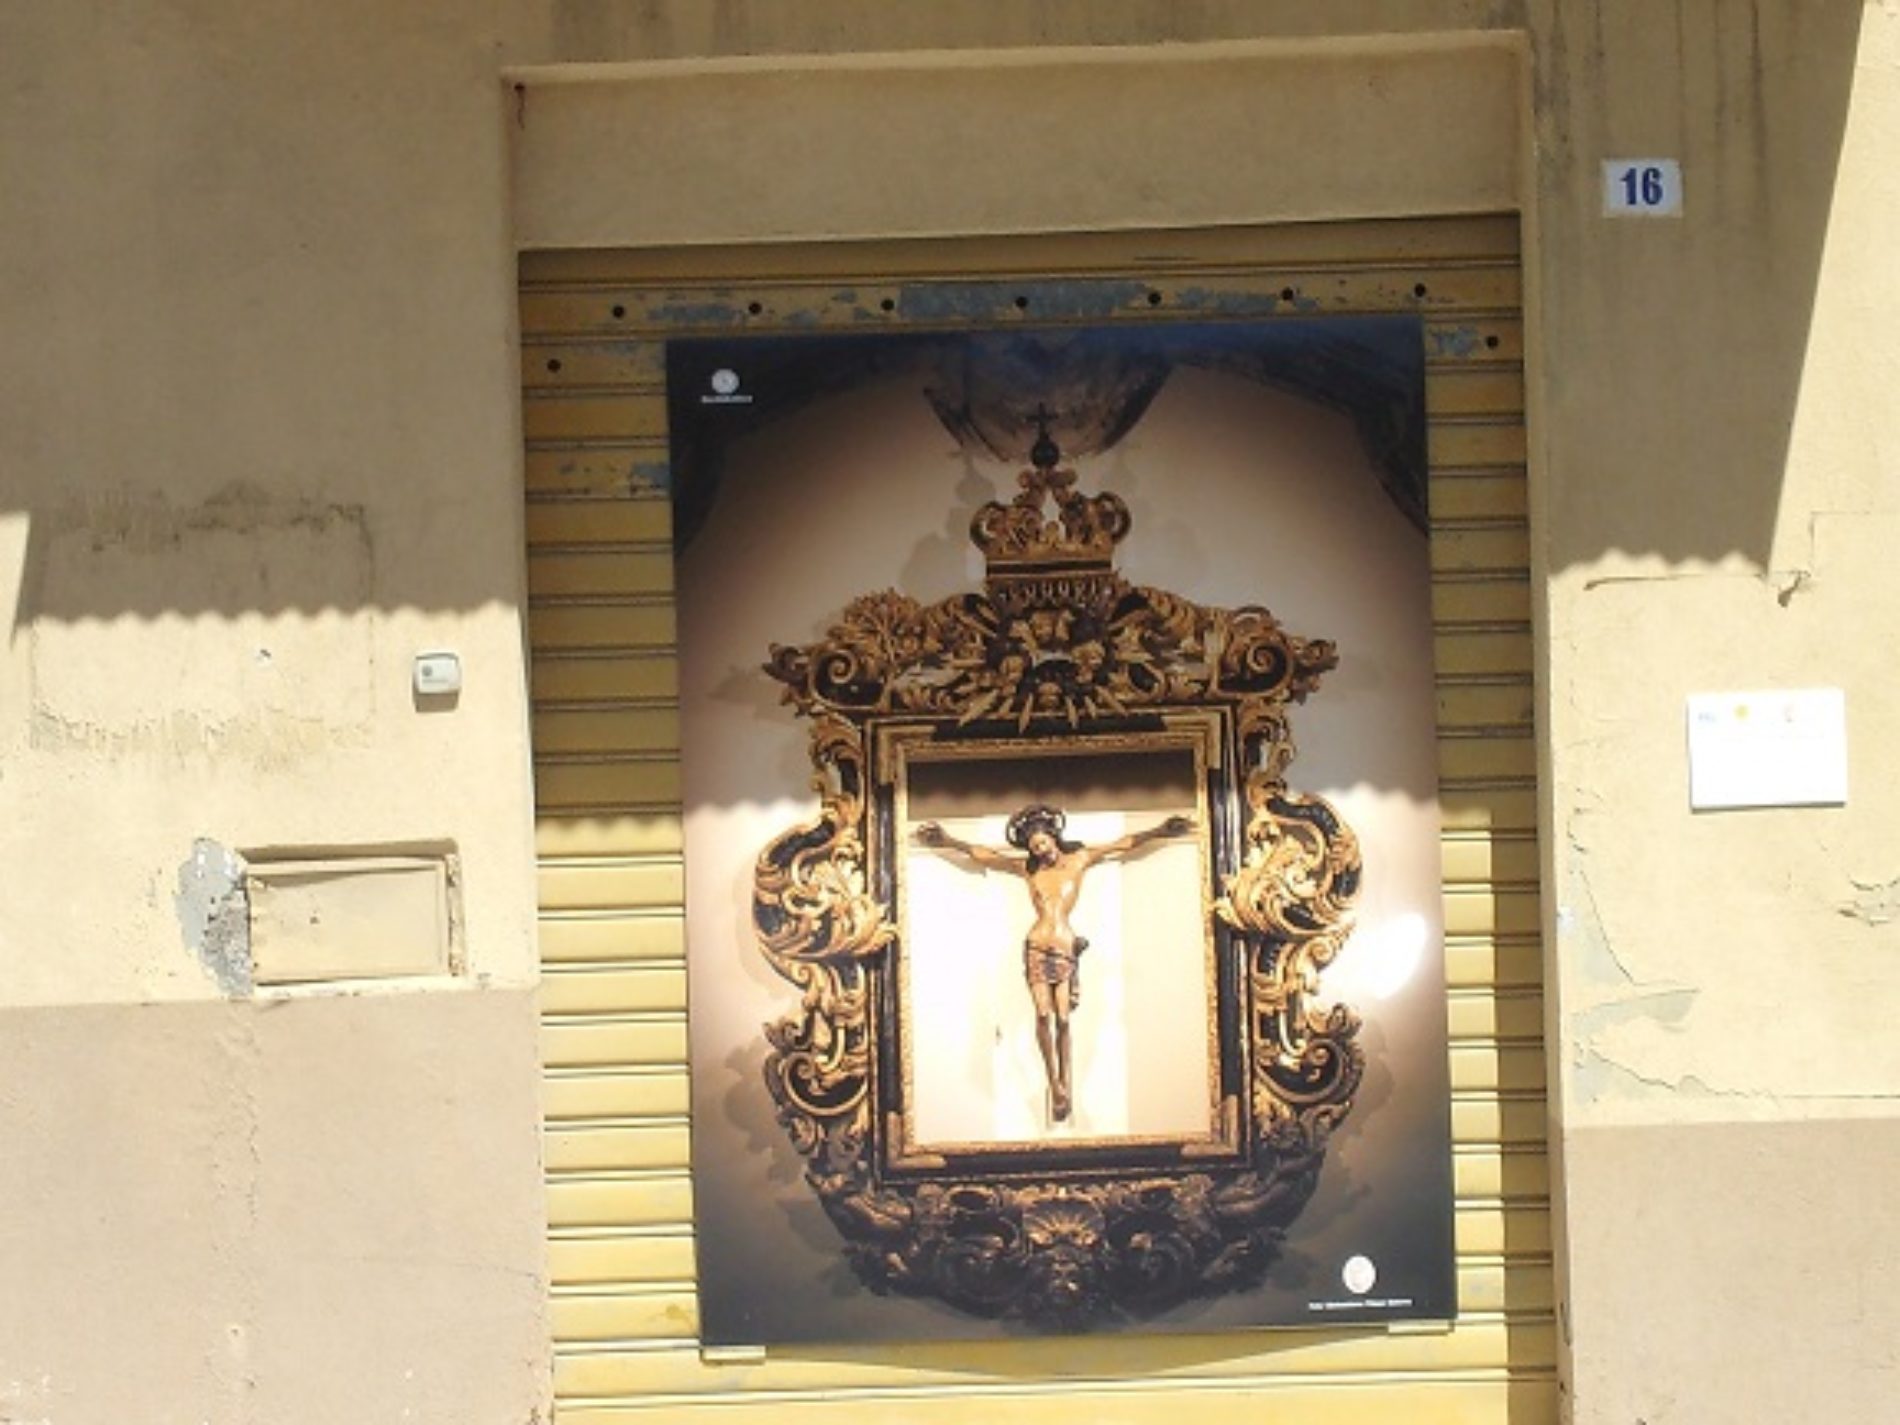 Diciotto pannelli hanno abbellito Pietraperzia durante la Settimana Santa